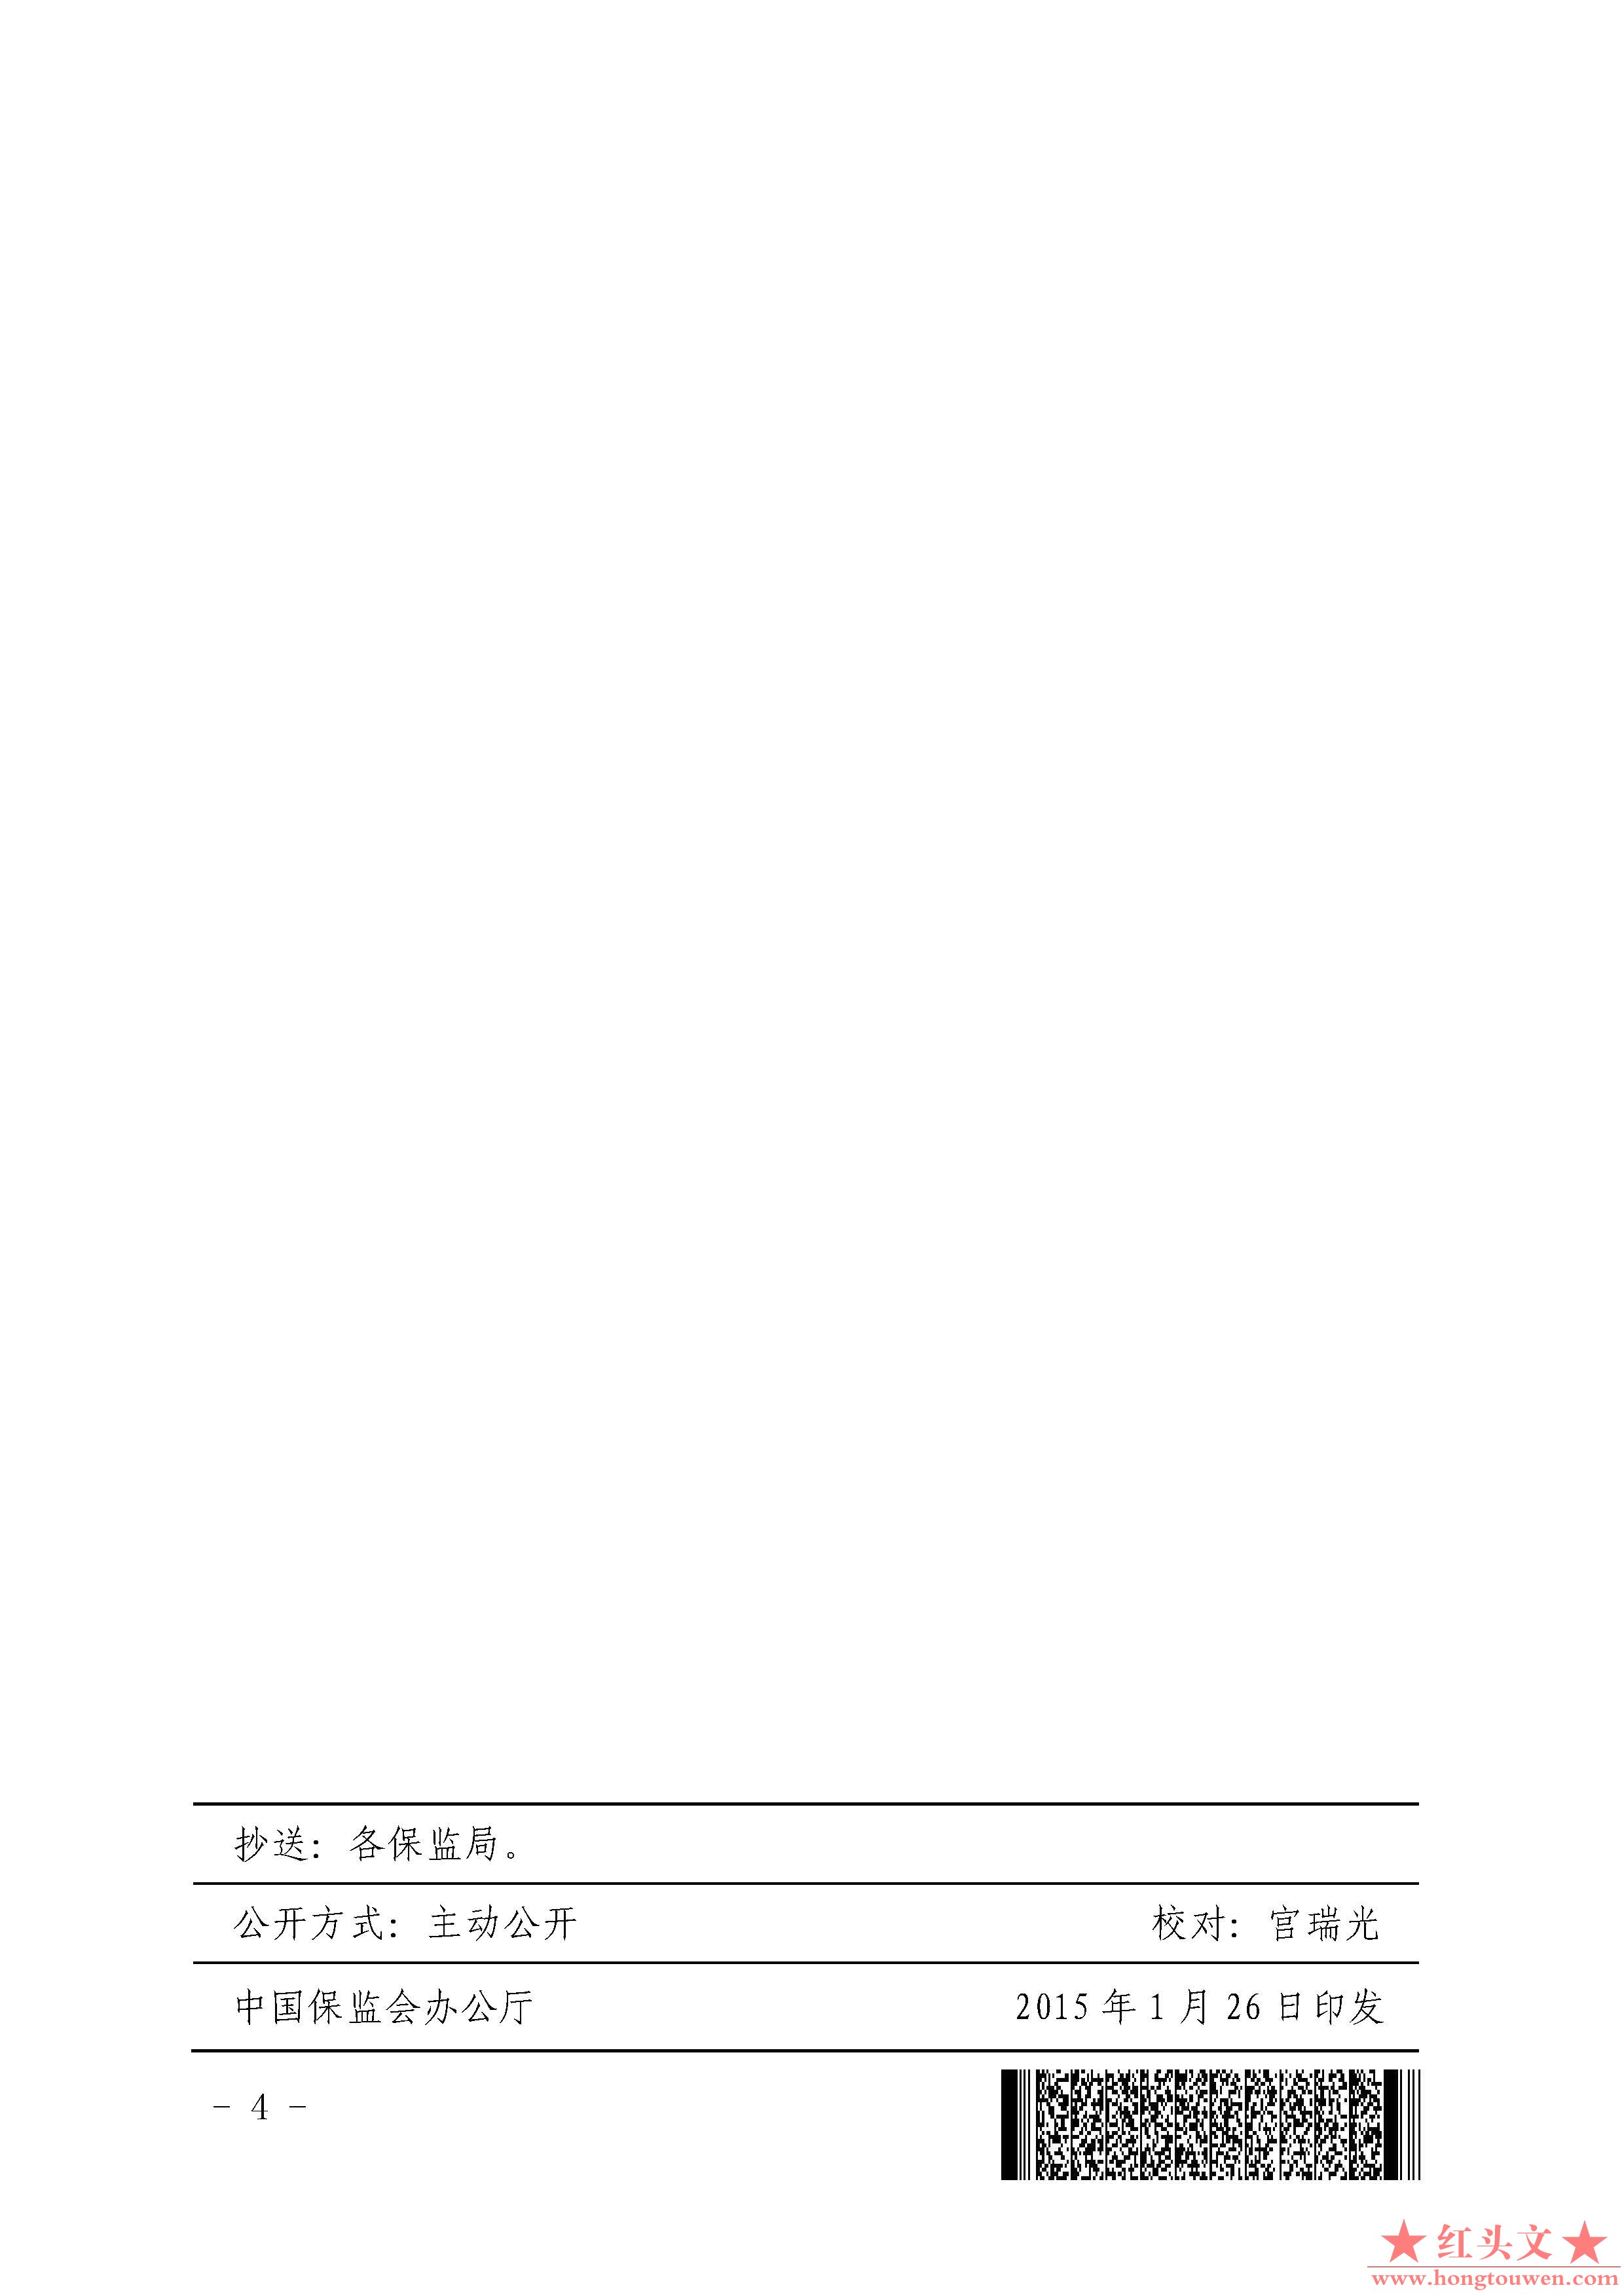 保监发[2015]12号-中国保监会关于规范人身保险公司赠送保险有关行为的通知_页面_4.jpg.jpg